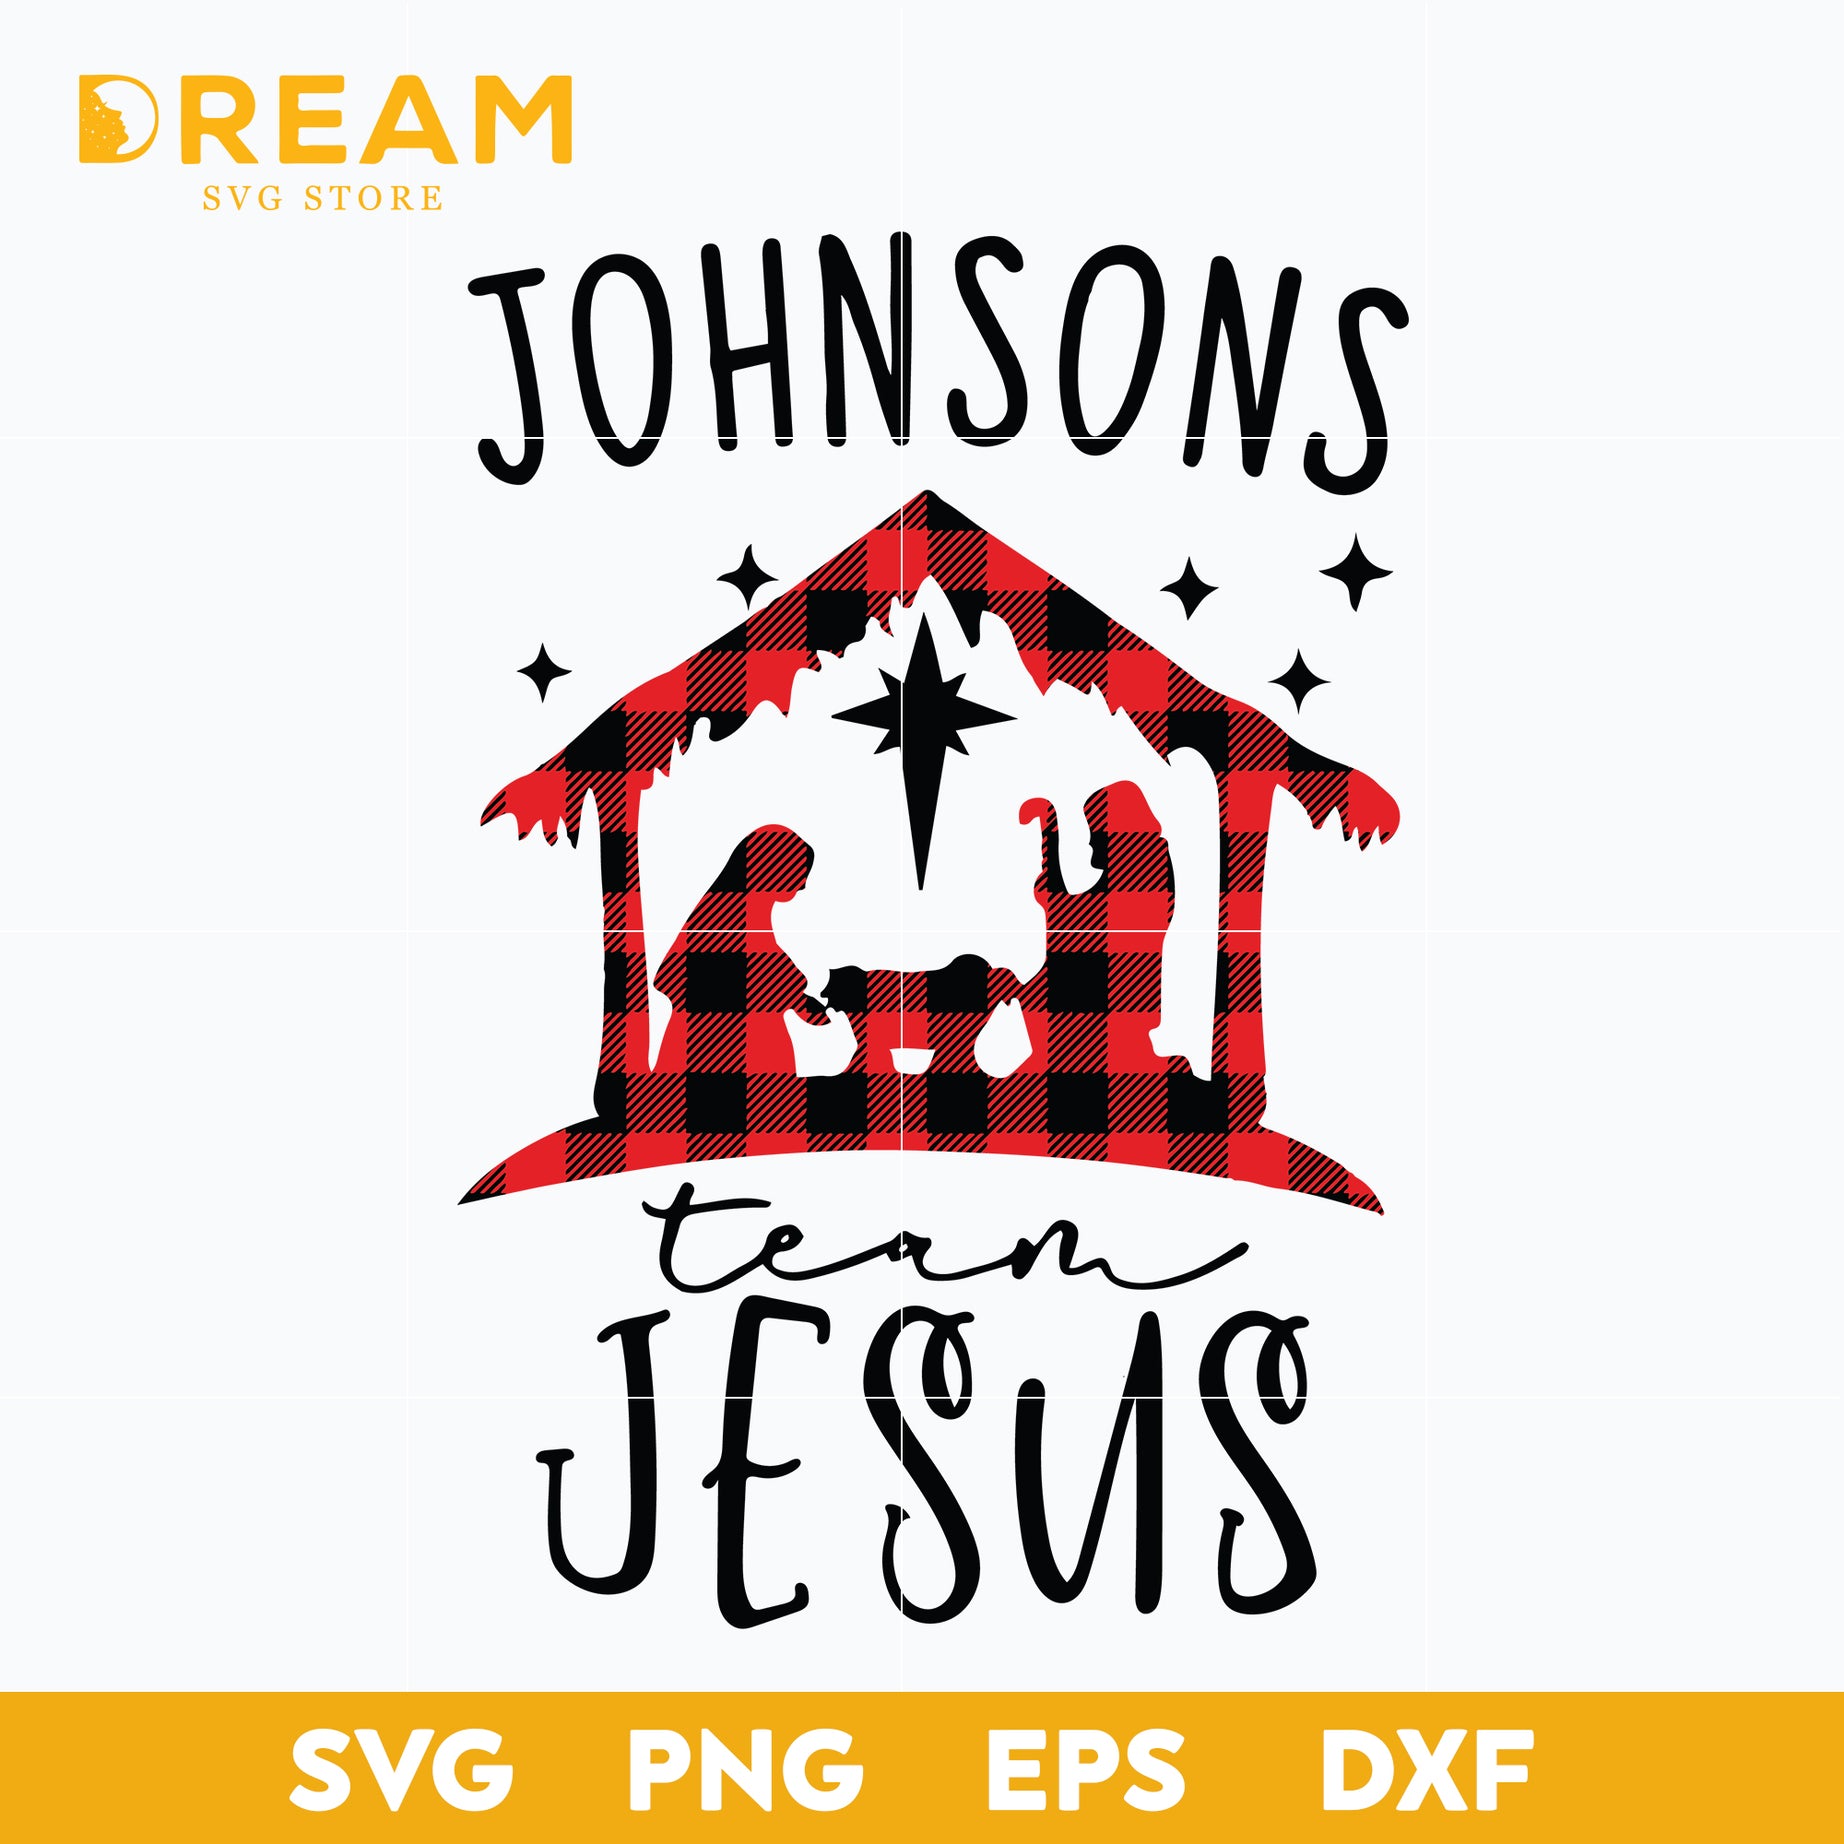 Johnsons team jesus svg, Christmas svg, png, dxf, eps digital file CRM14122018L